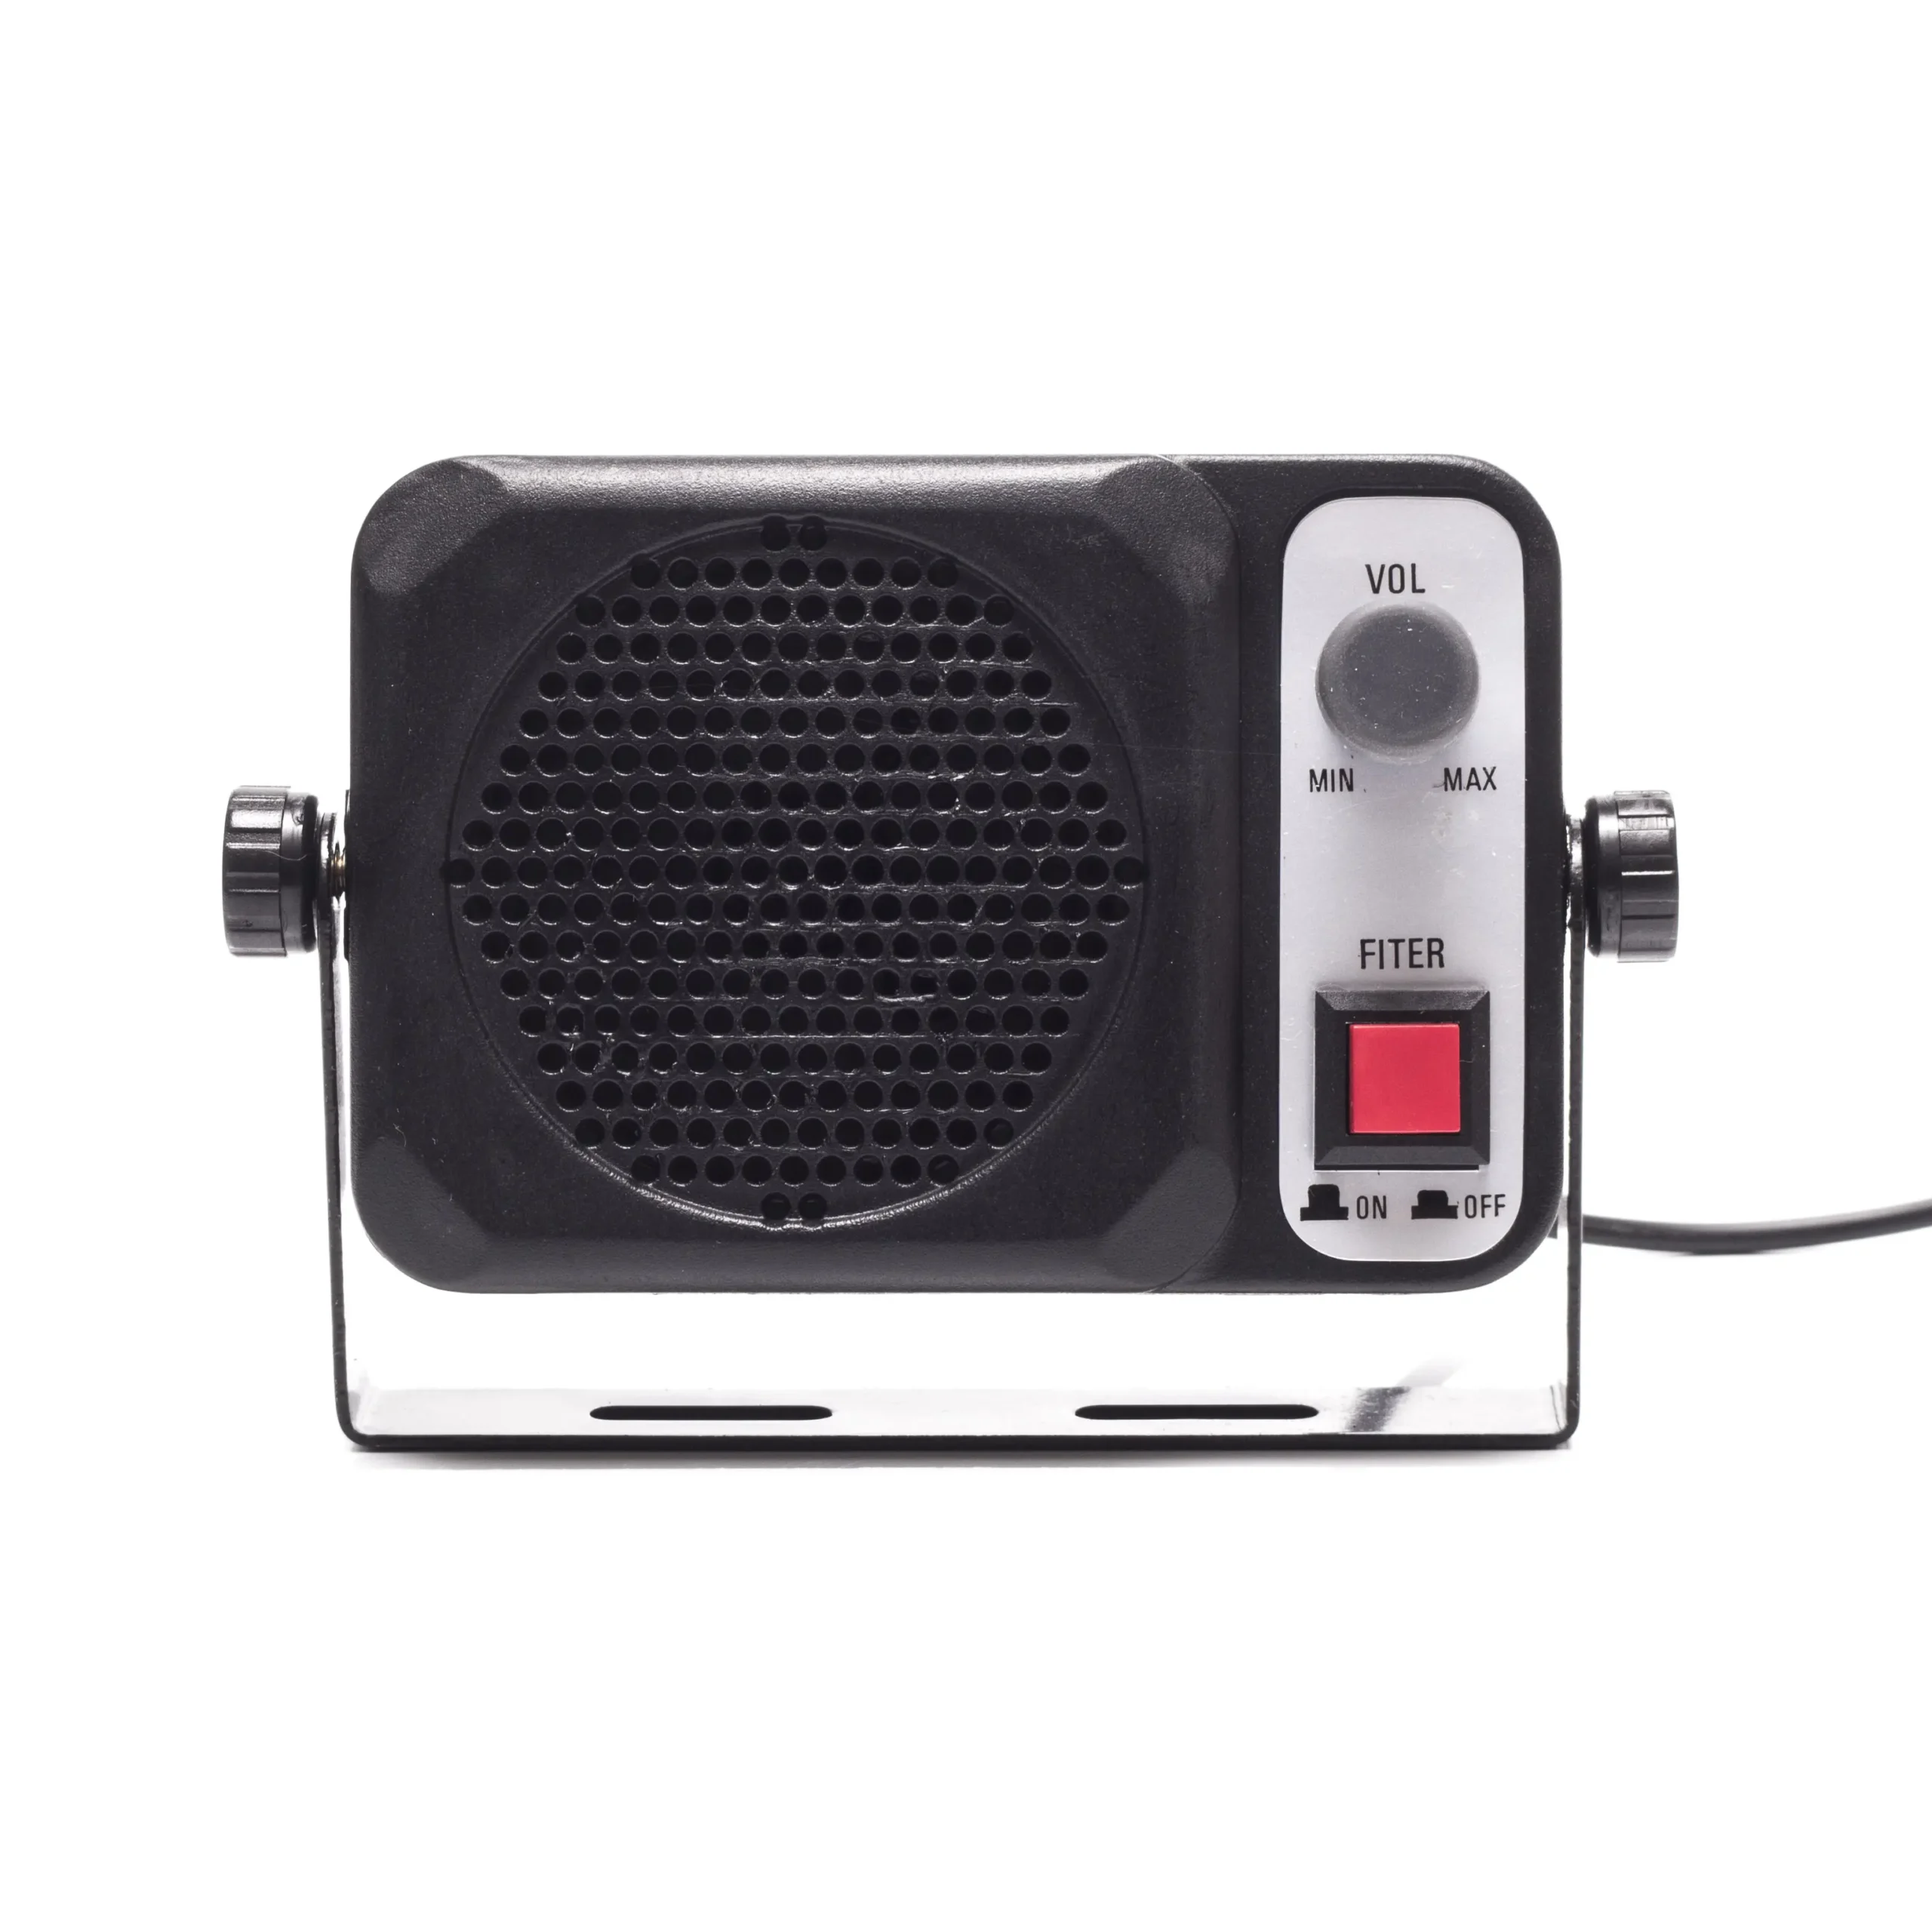 cb radio głośnik zewnętrzny - Jak podłączyć głośnik do CB radia